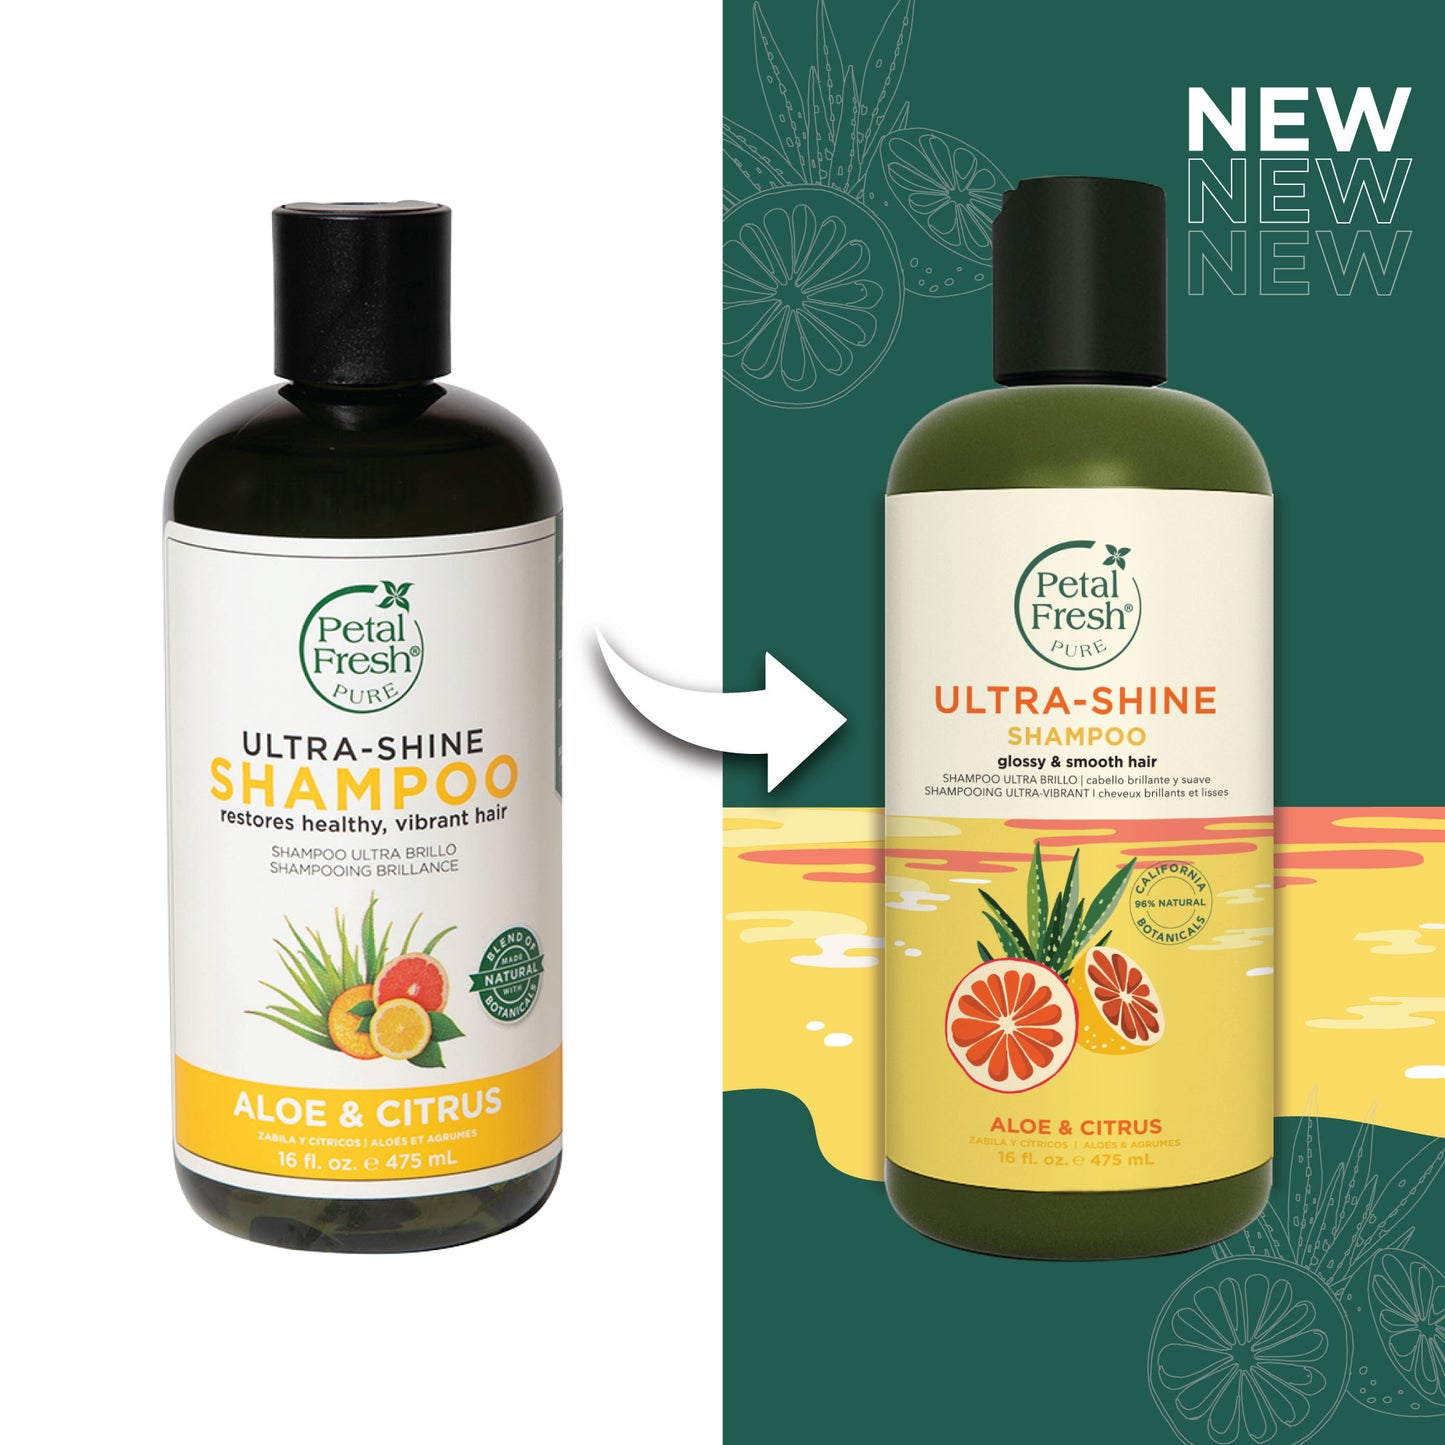 Ultra-Shine Shampoo with Aloe Vera and Citrus